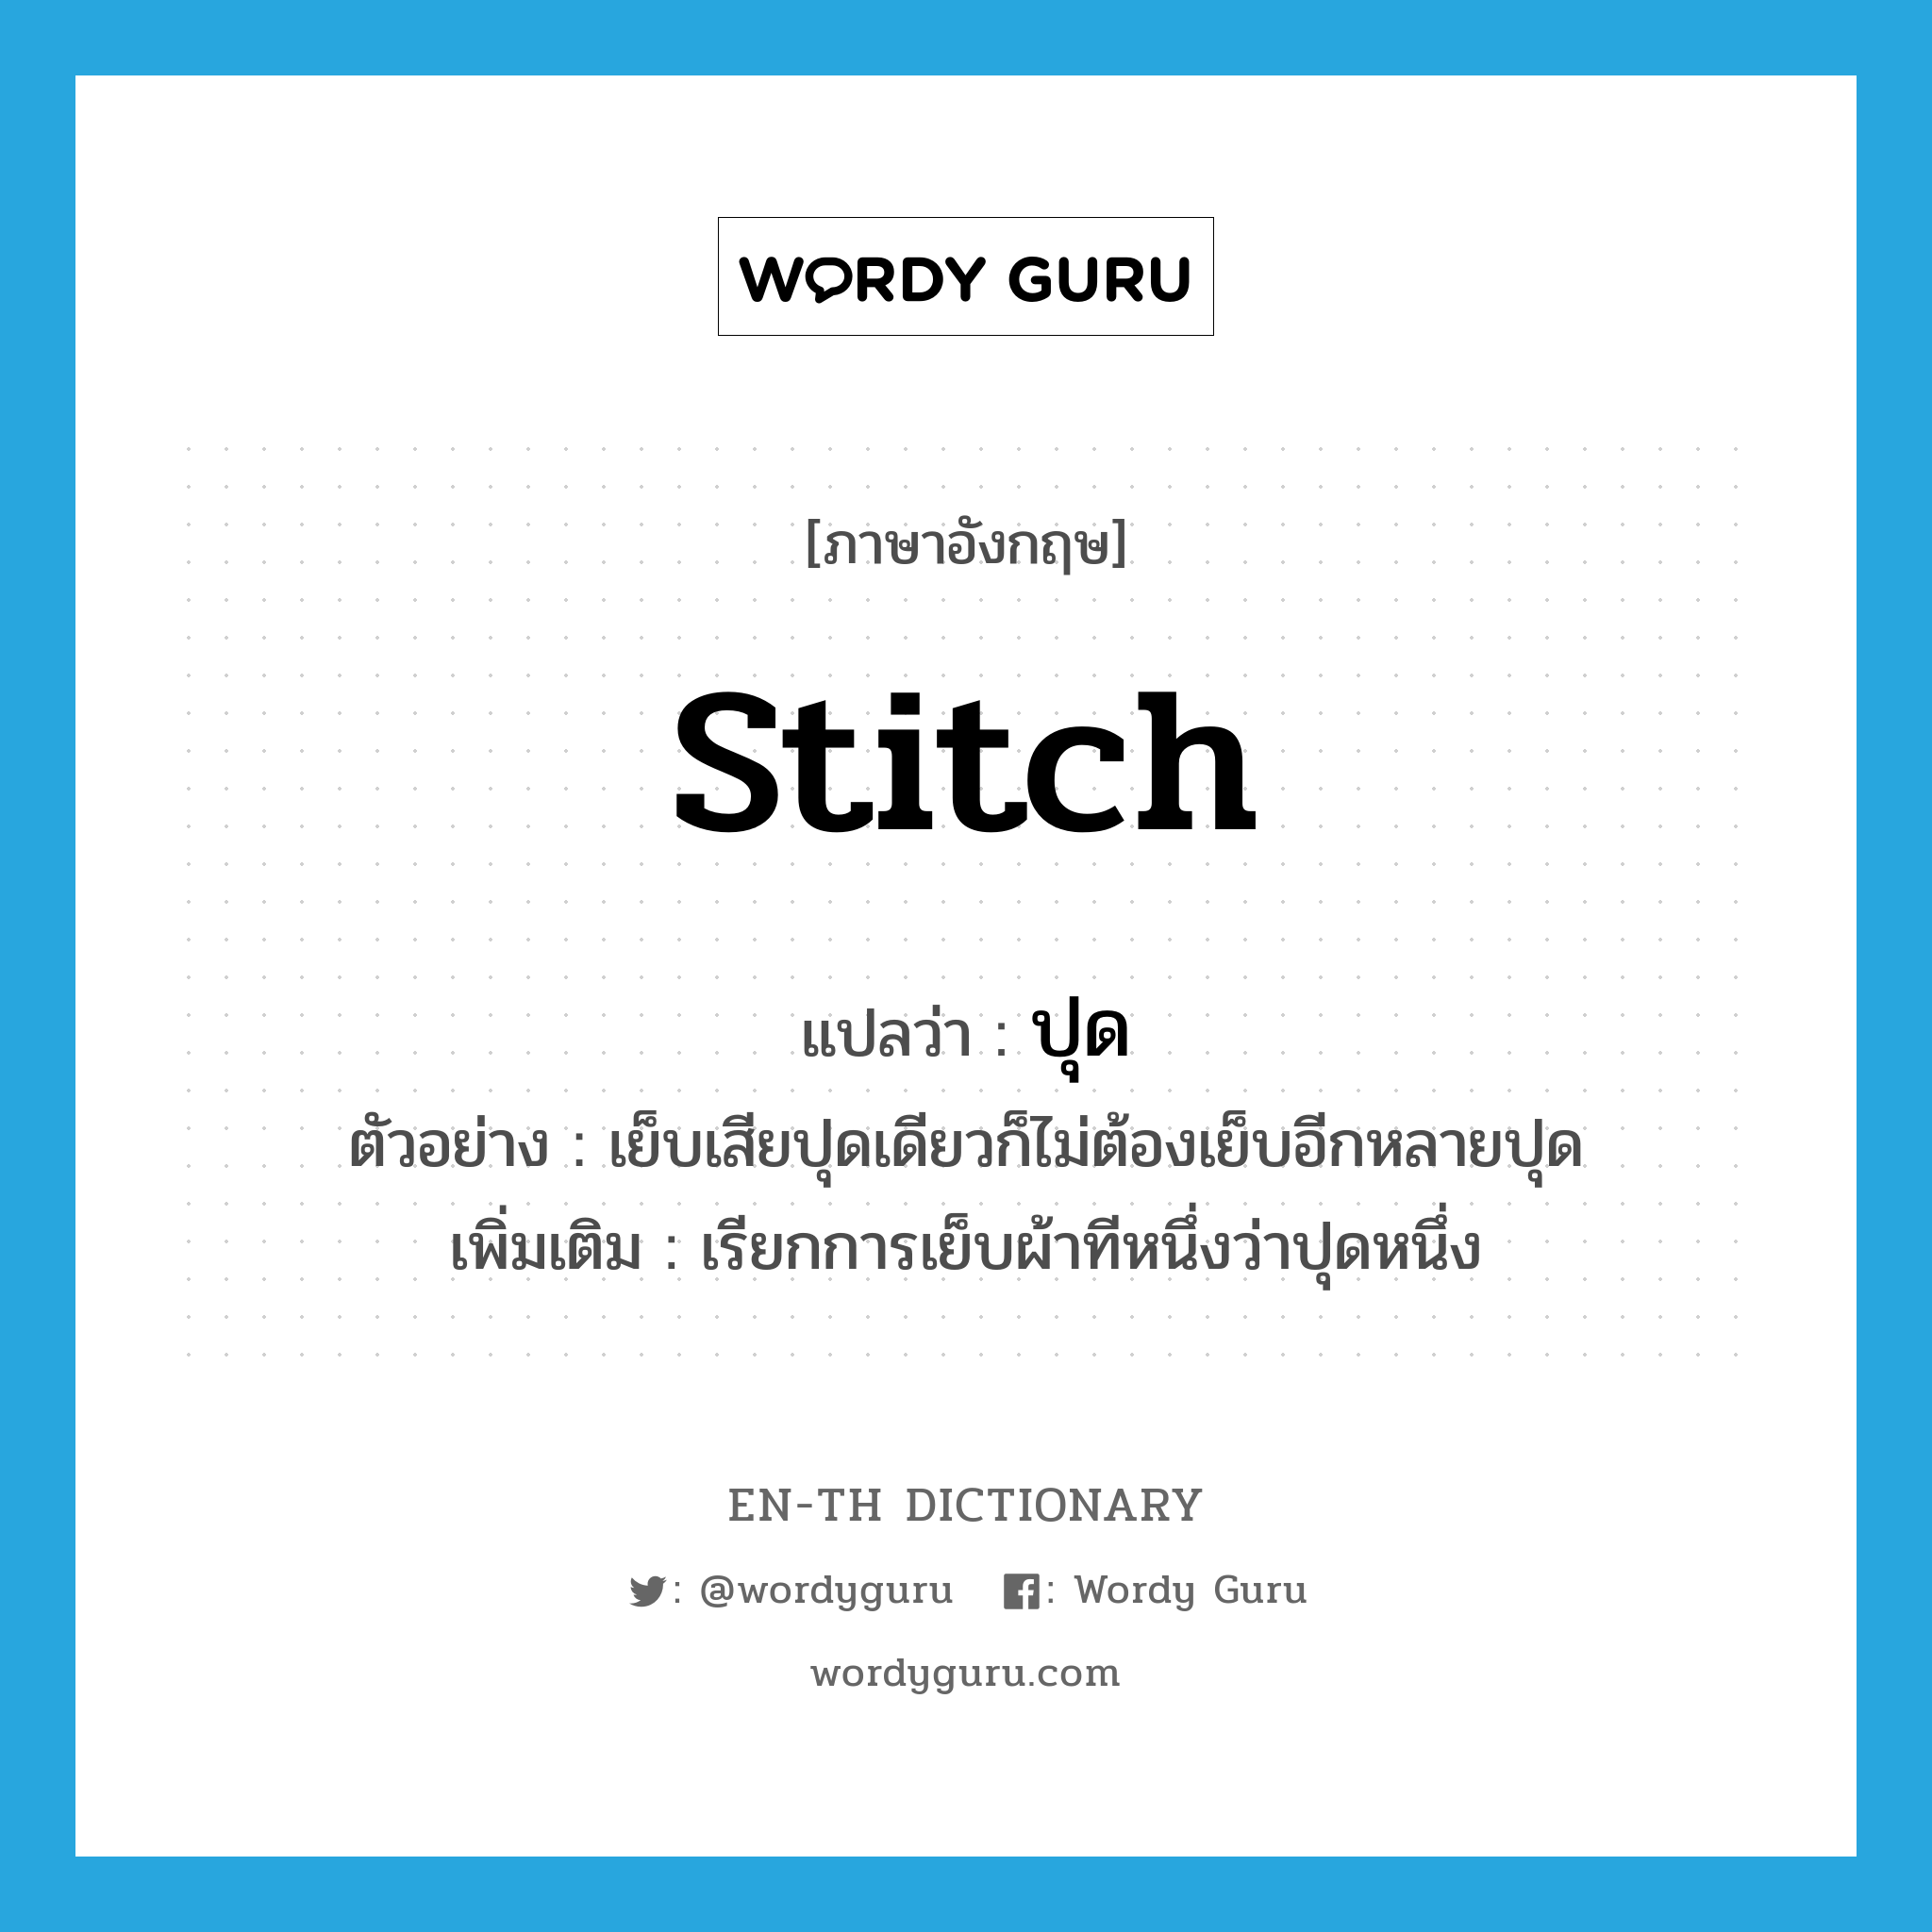 stitch แปลว่า?, คำศัพท์ภาษาอังกฤษ stitch แปลว่า ปุด ประเภท N ตัวอย่าง เย็บเสียปุดเดียวก็ไม่ต้องเย็บอีกหลายปุด เพิ่มเติม เรียกการเย็บผ้าทีหนึ่งว่าปุดหนึ่ง หมวด N